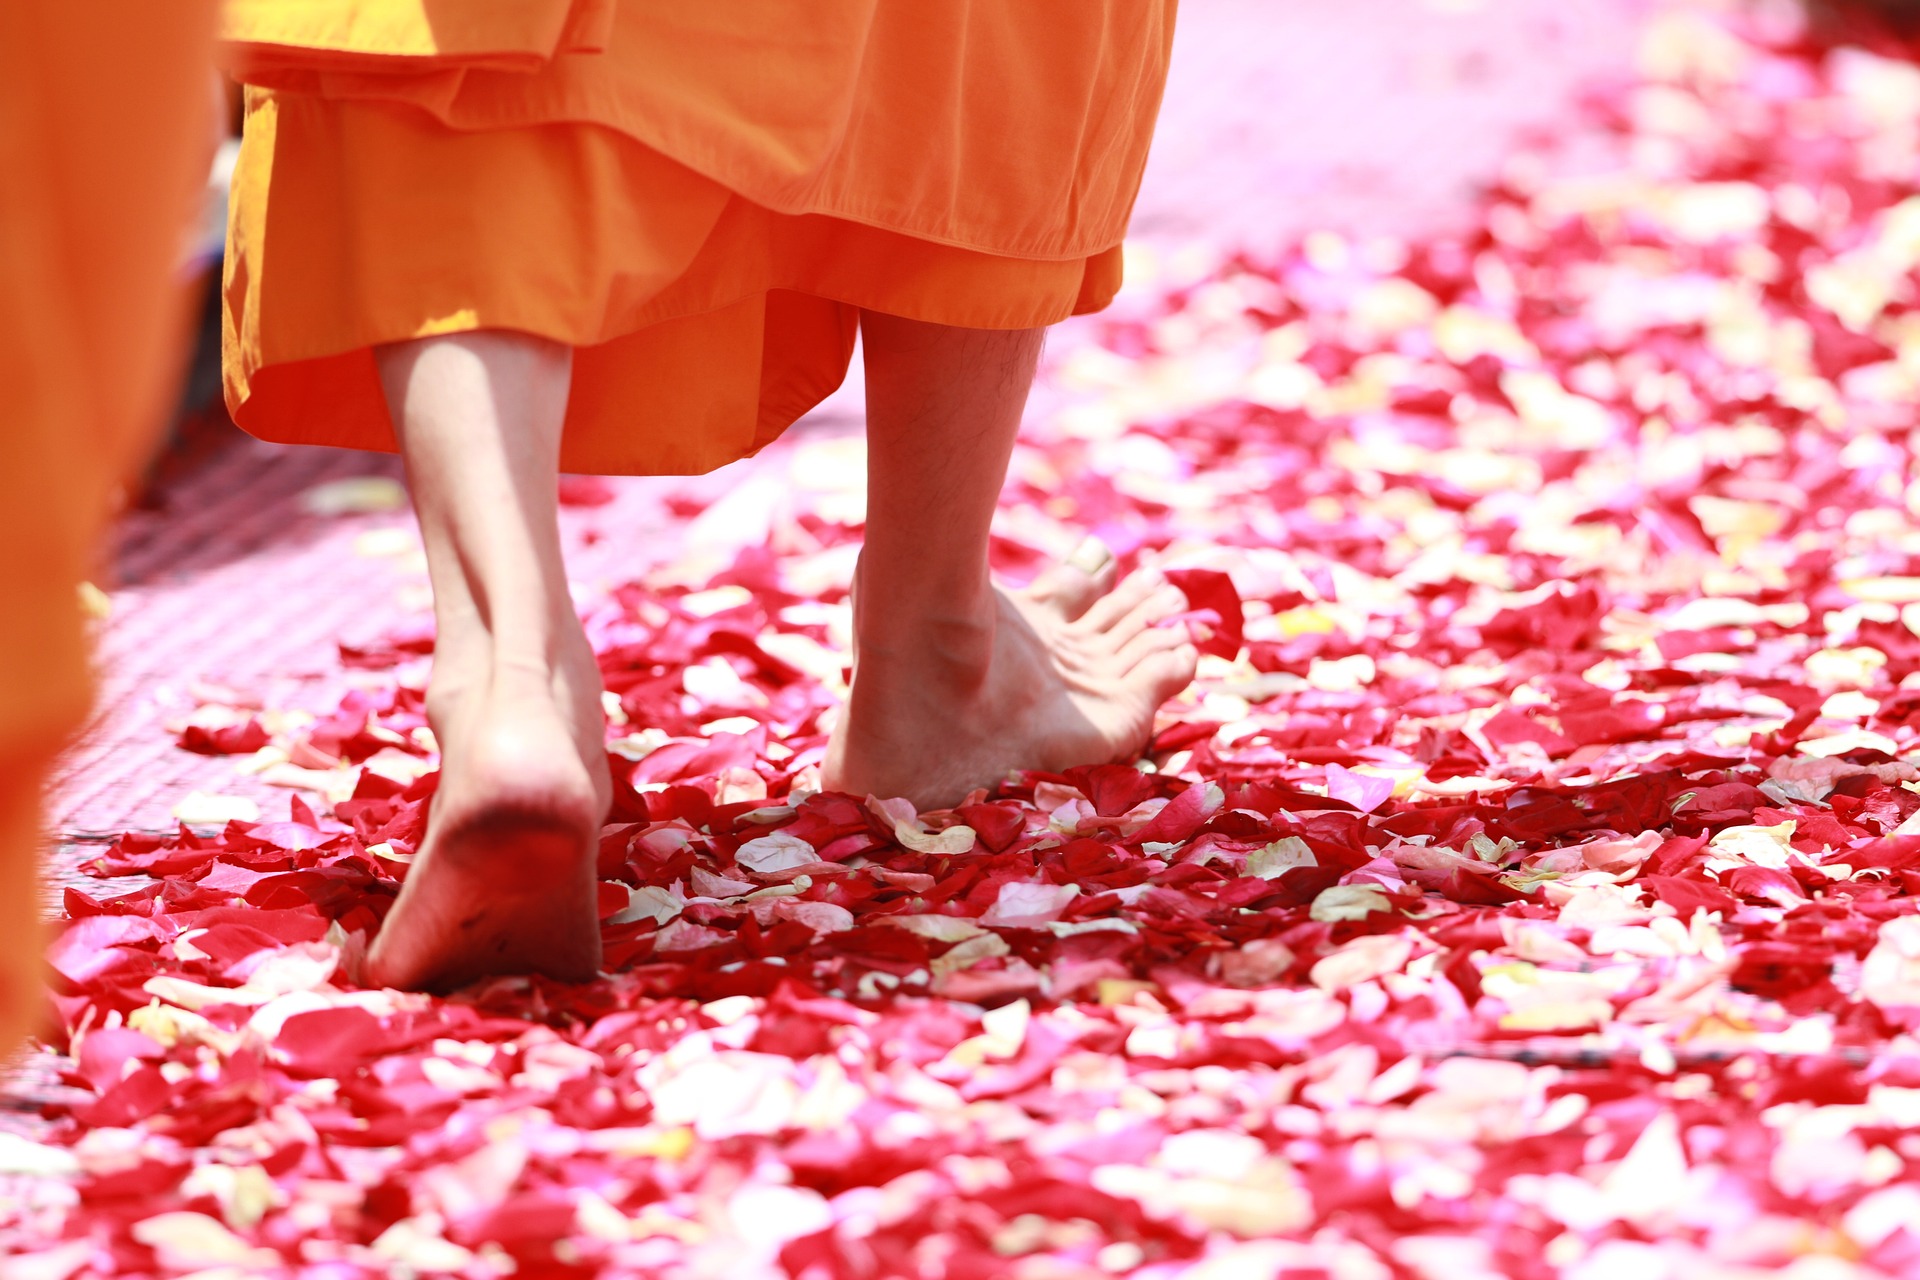 Monk walking on petals, representing Tonglen practice